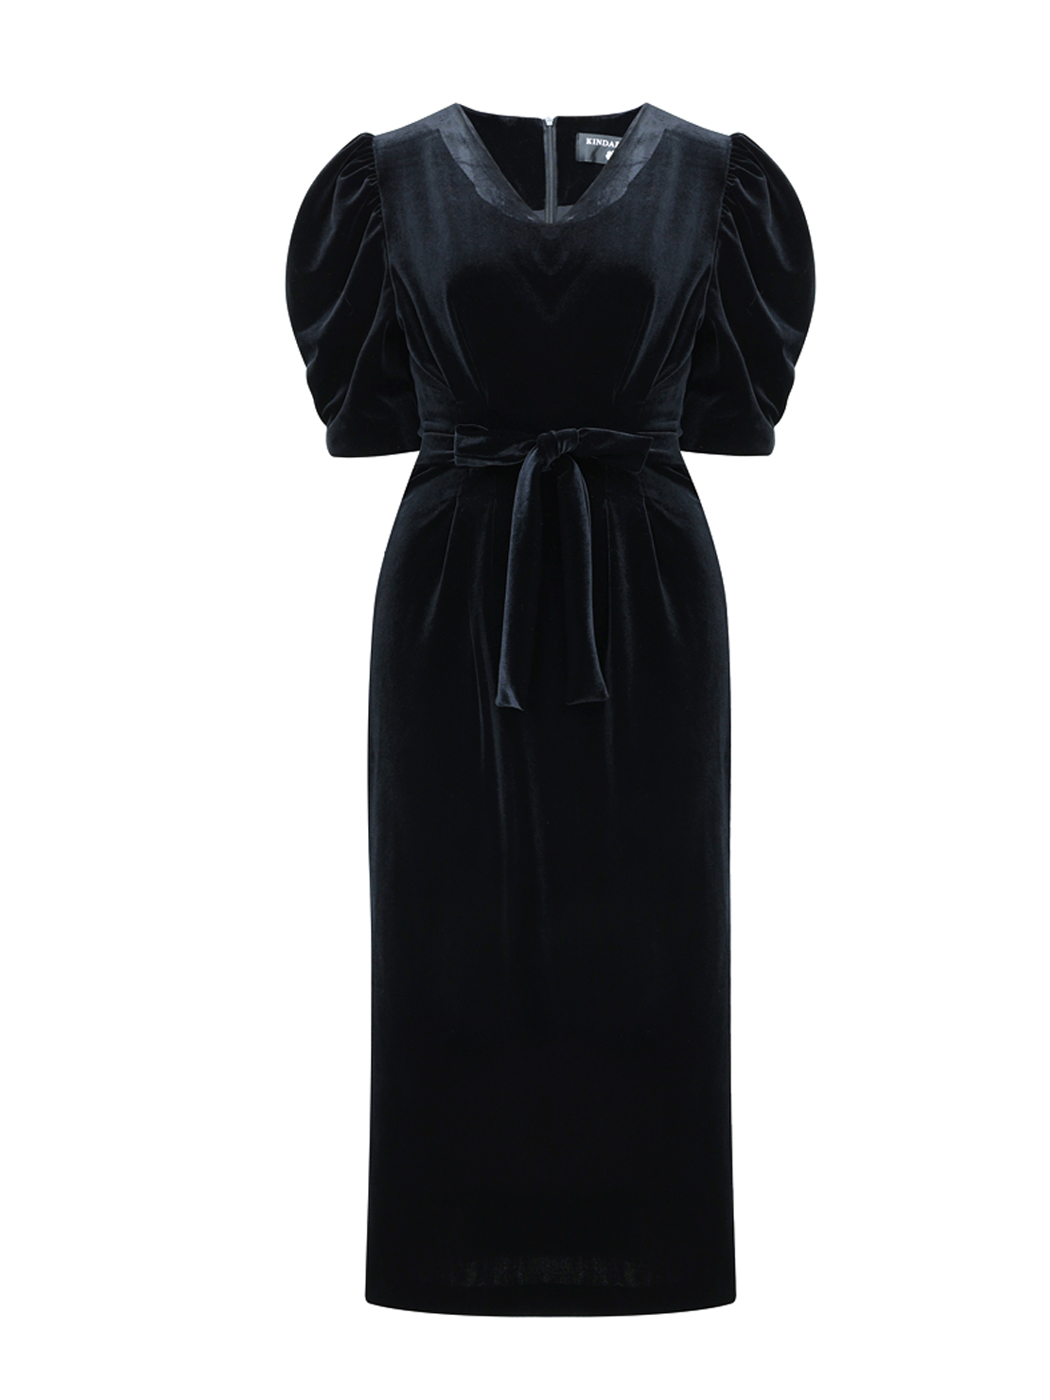 classy black velvet long dress